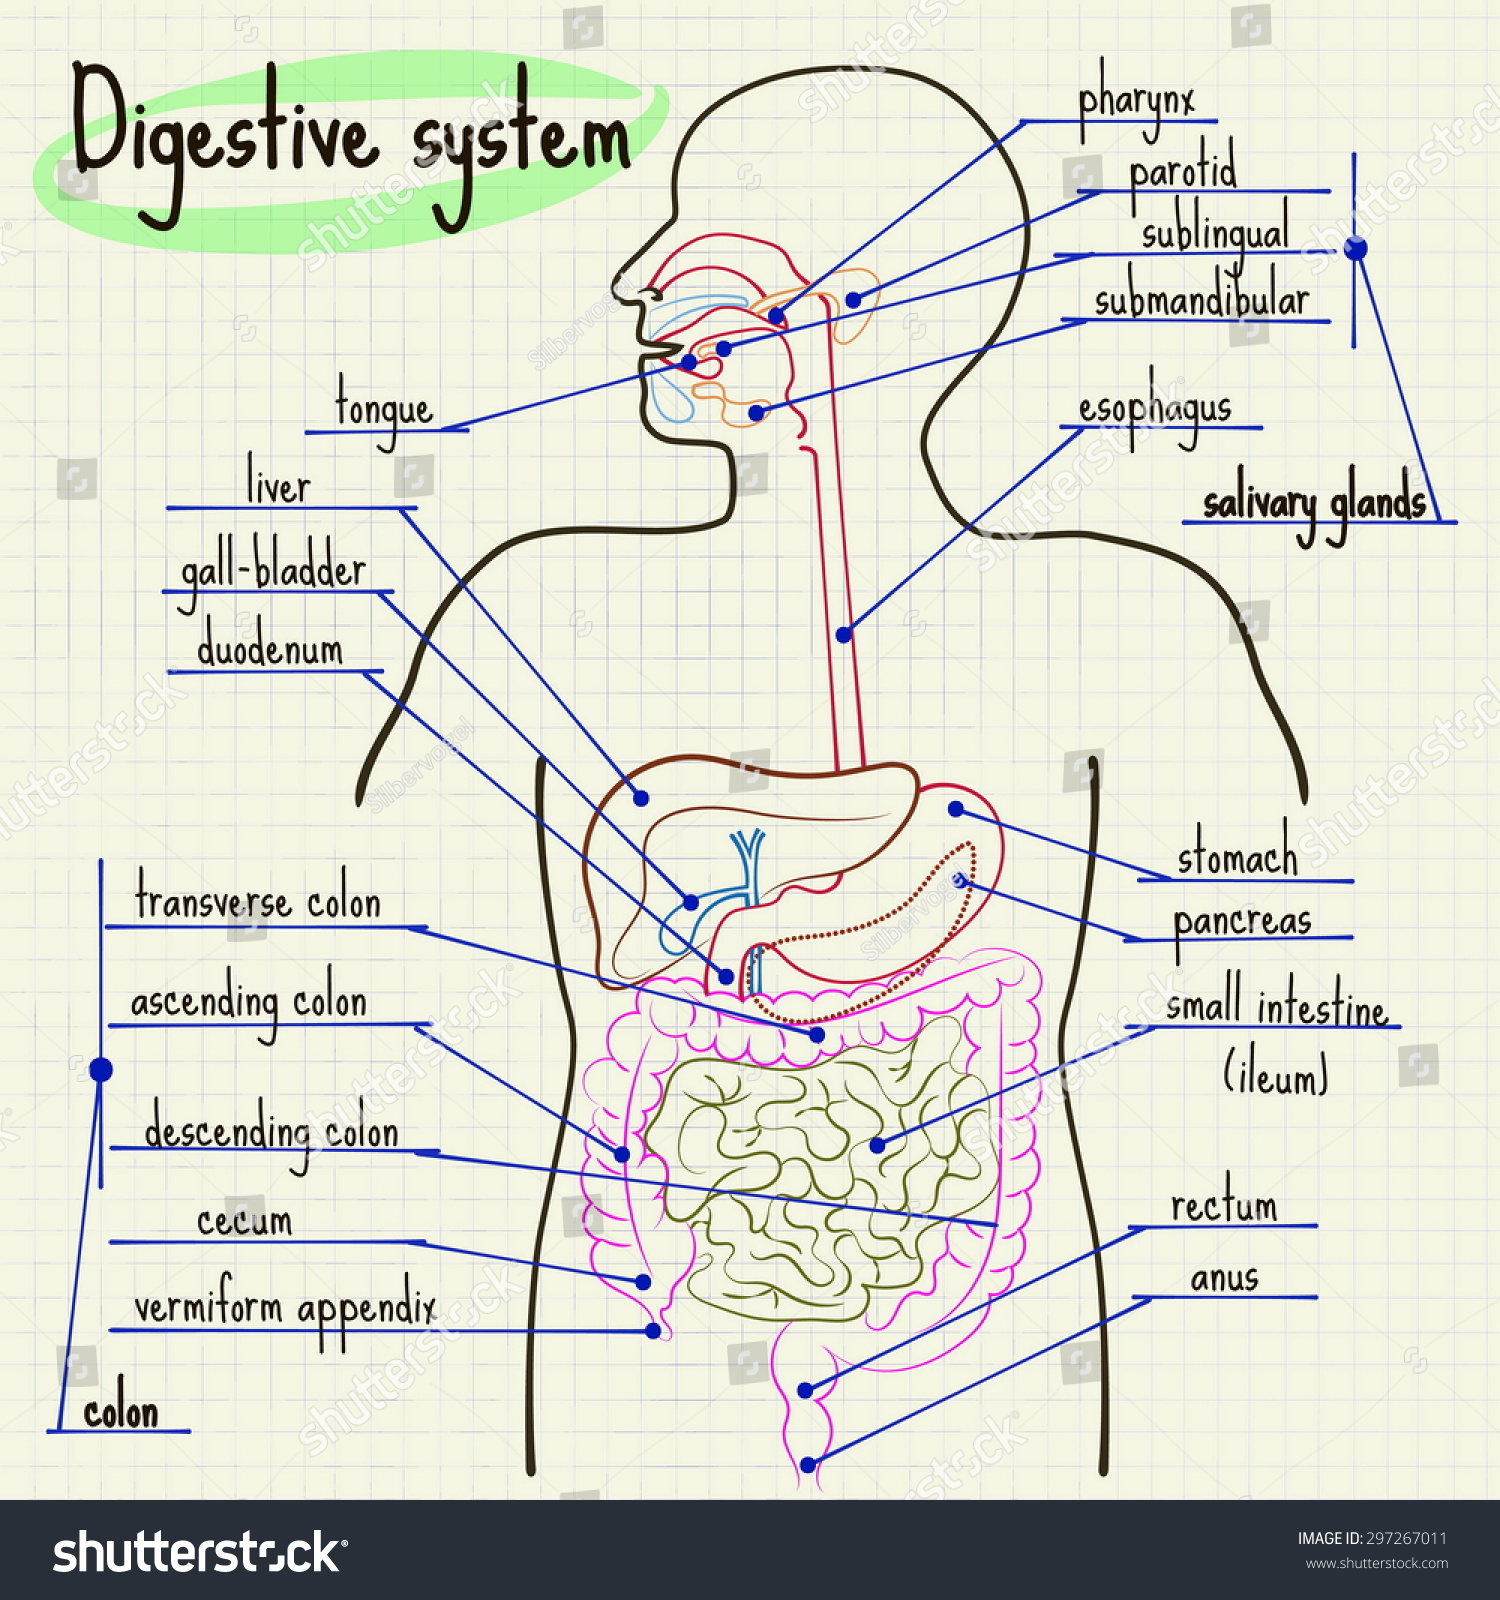 Vector Illustration Digestive System Of Man - 297267011 : Shutterstock